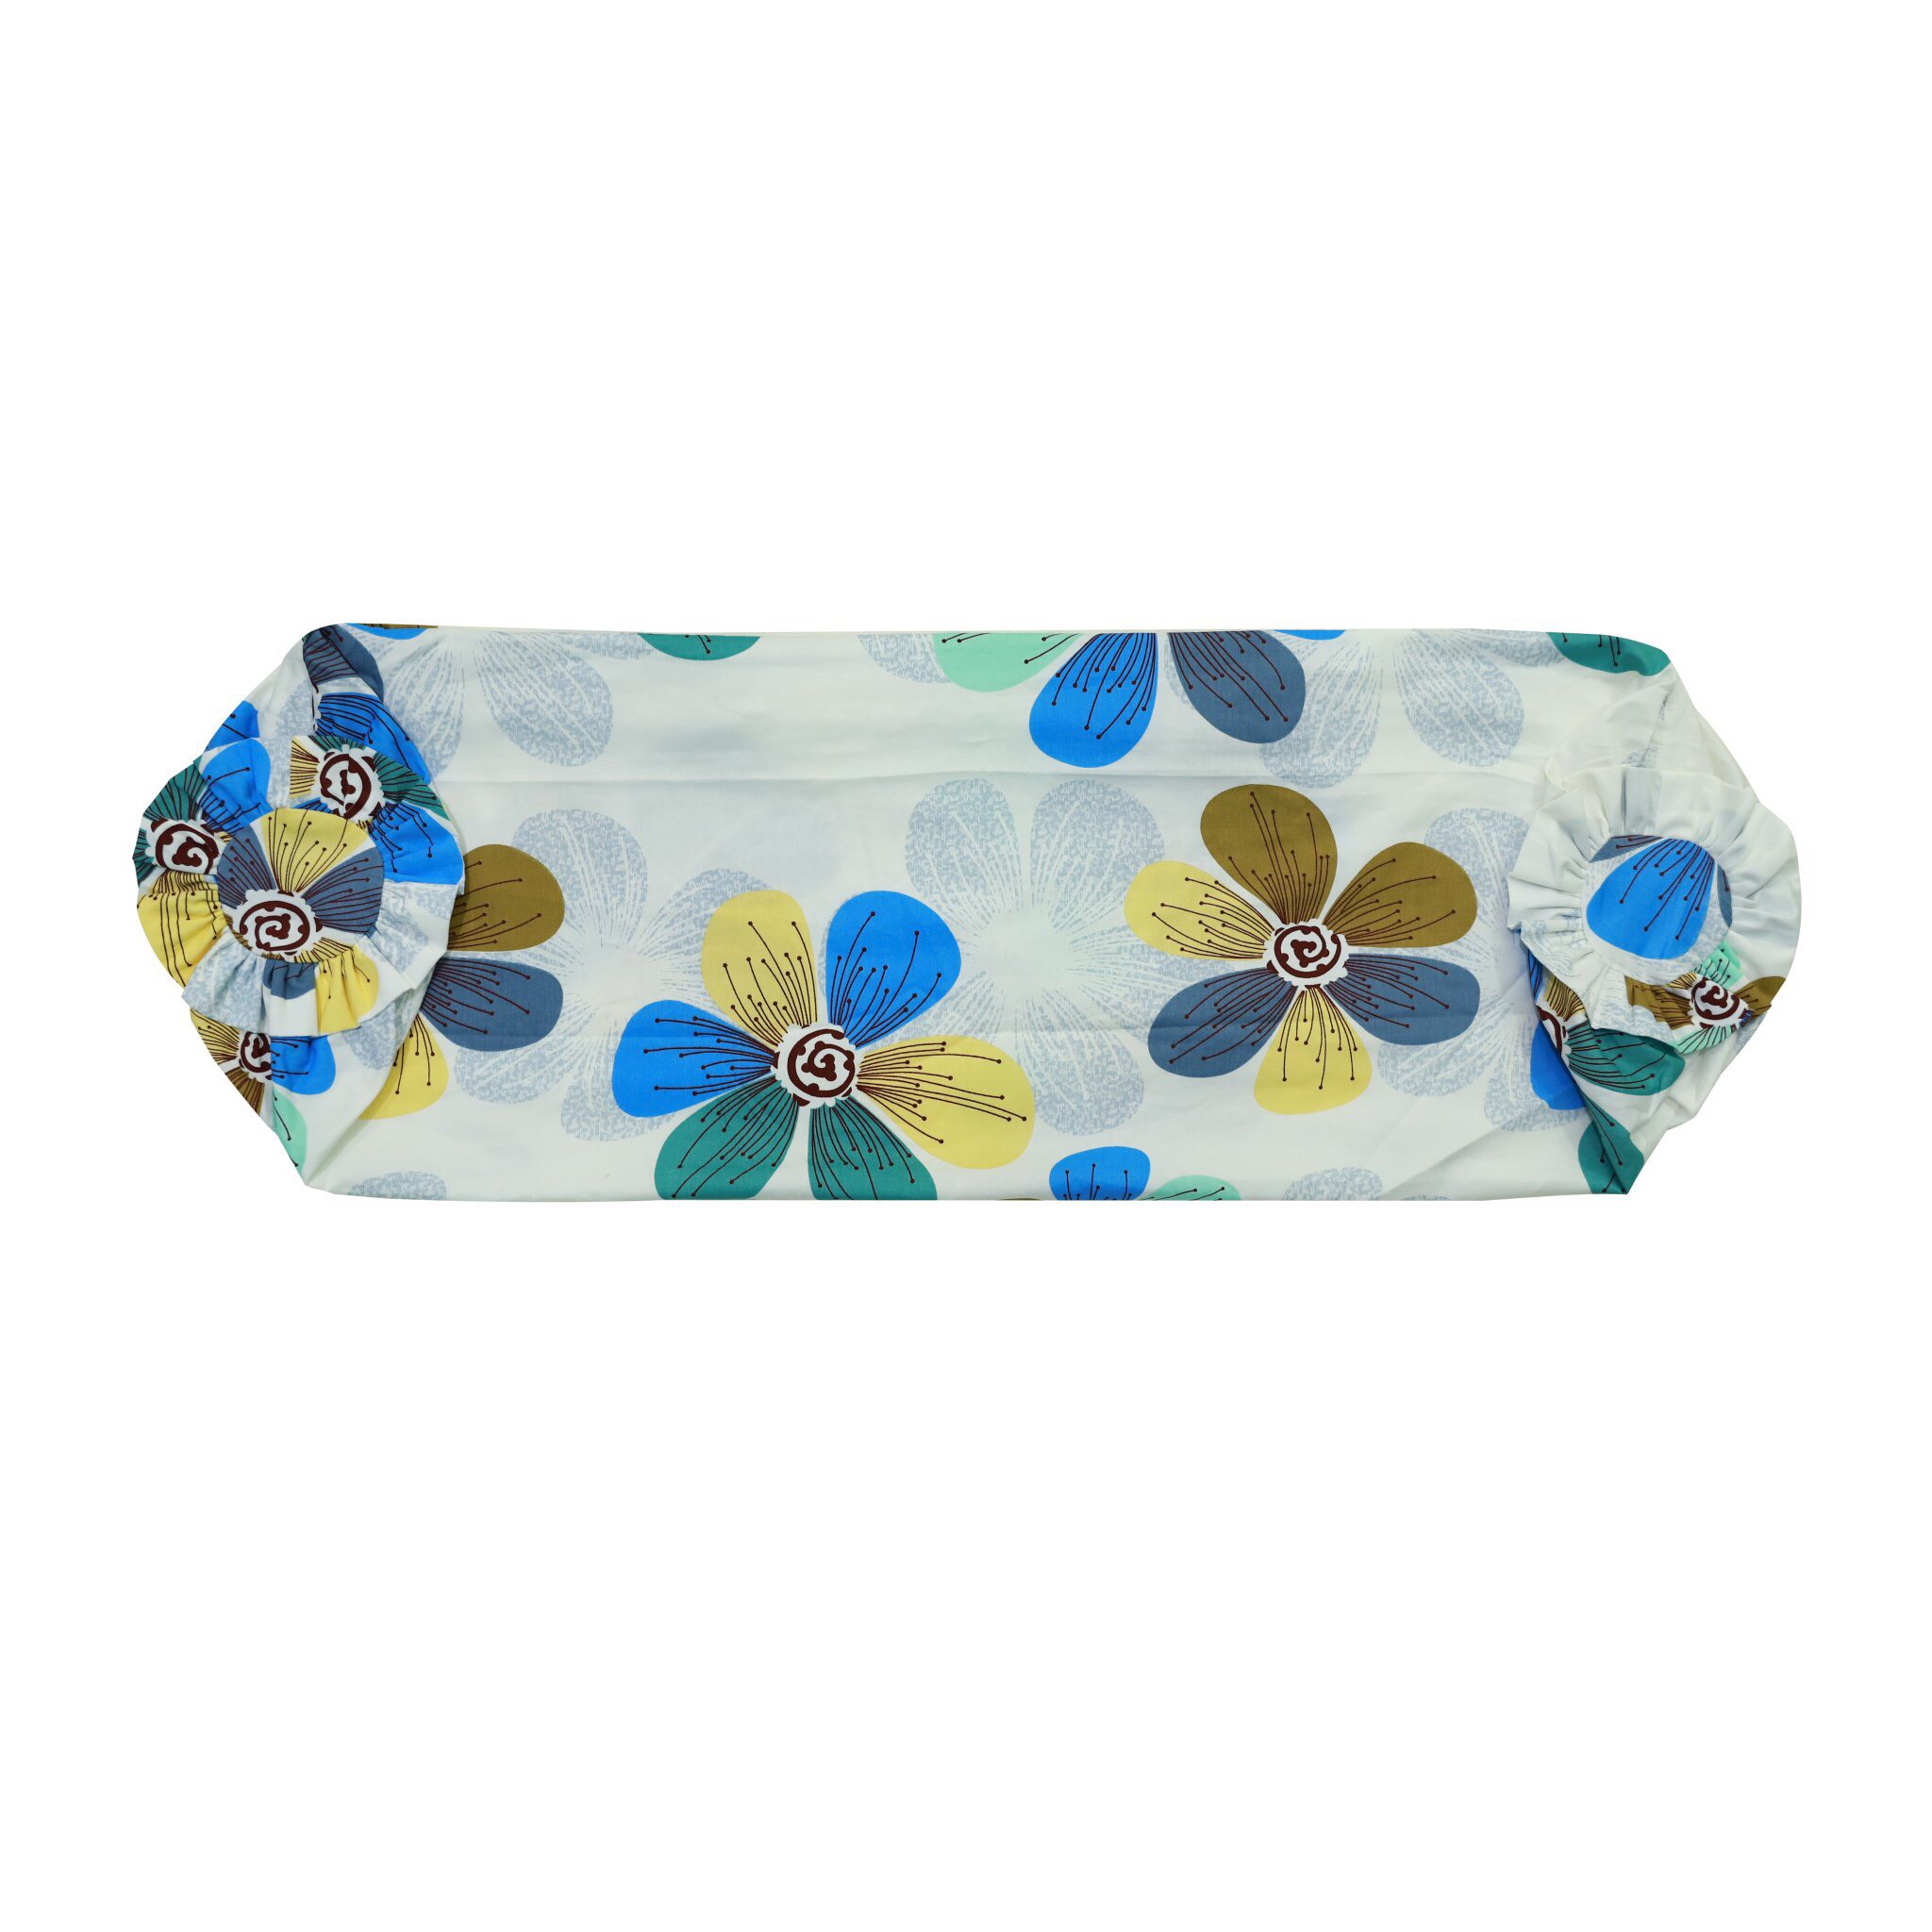 Áo gối ôm dây kéo bèo cotton hoa (37 x 105 cm)- Giao màu ngẫu nhiên